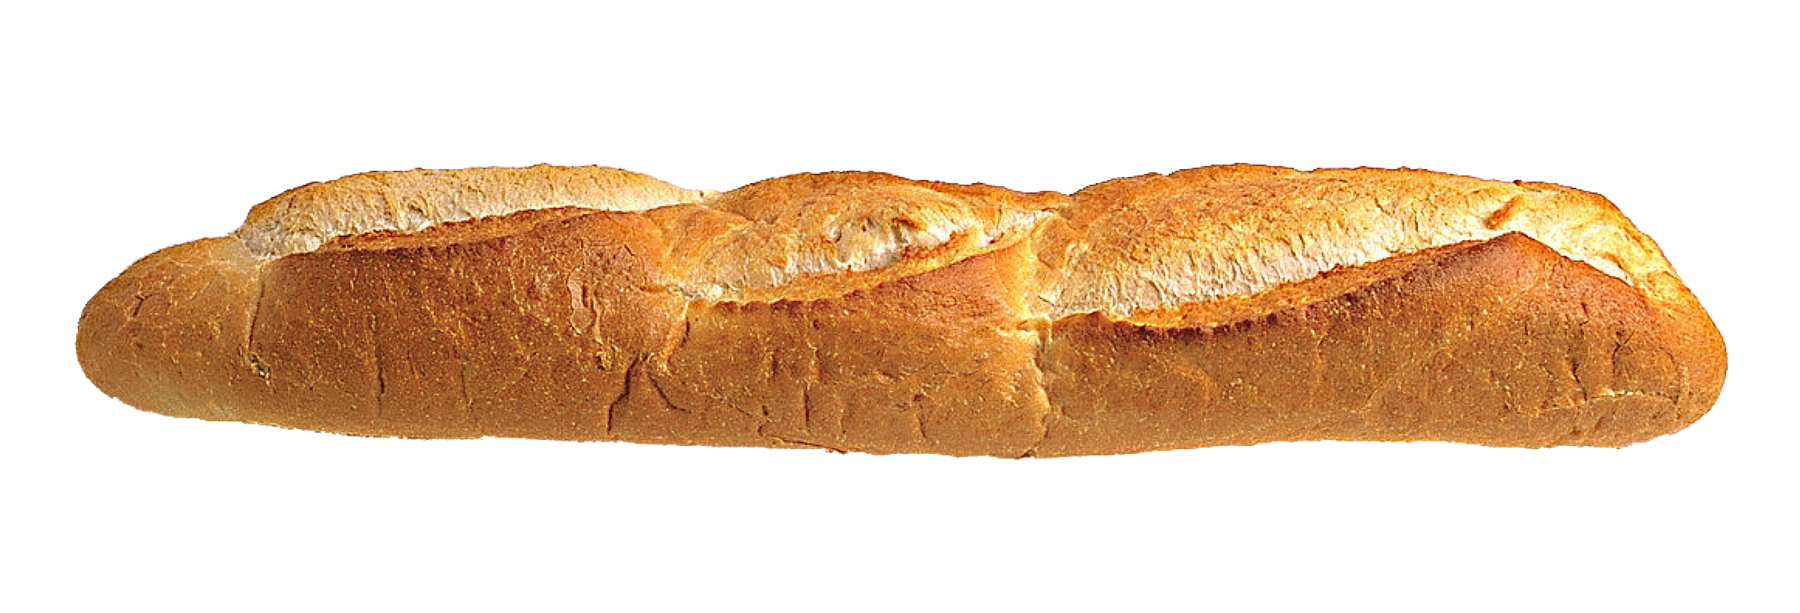 Long Loaf Bread PNG Image